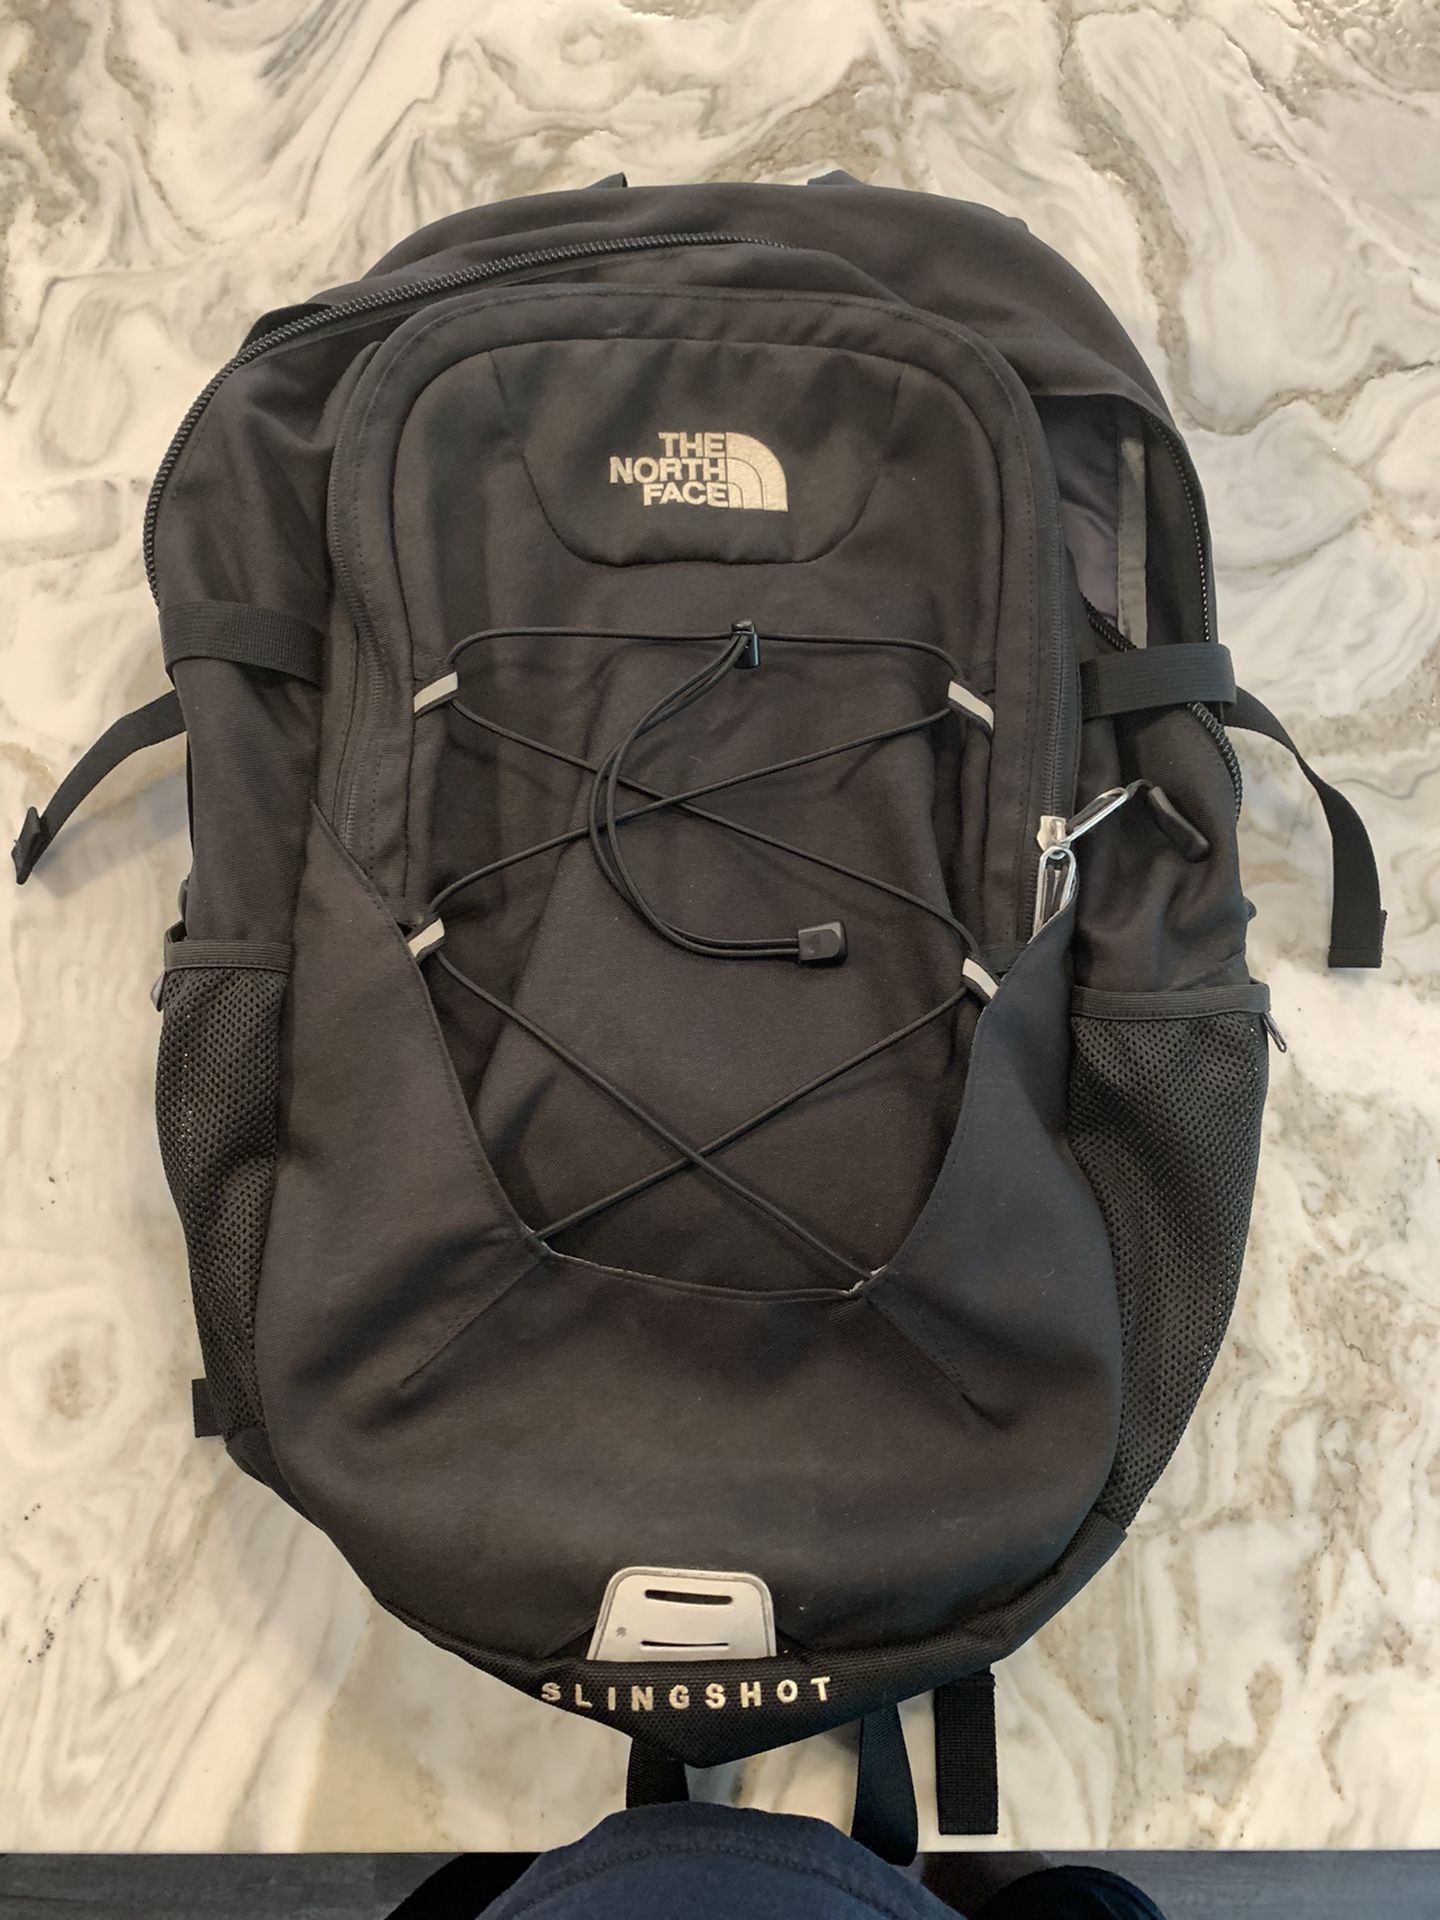 The North Face Slingshot backpack